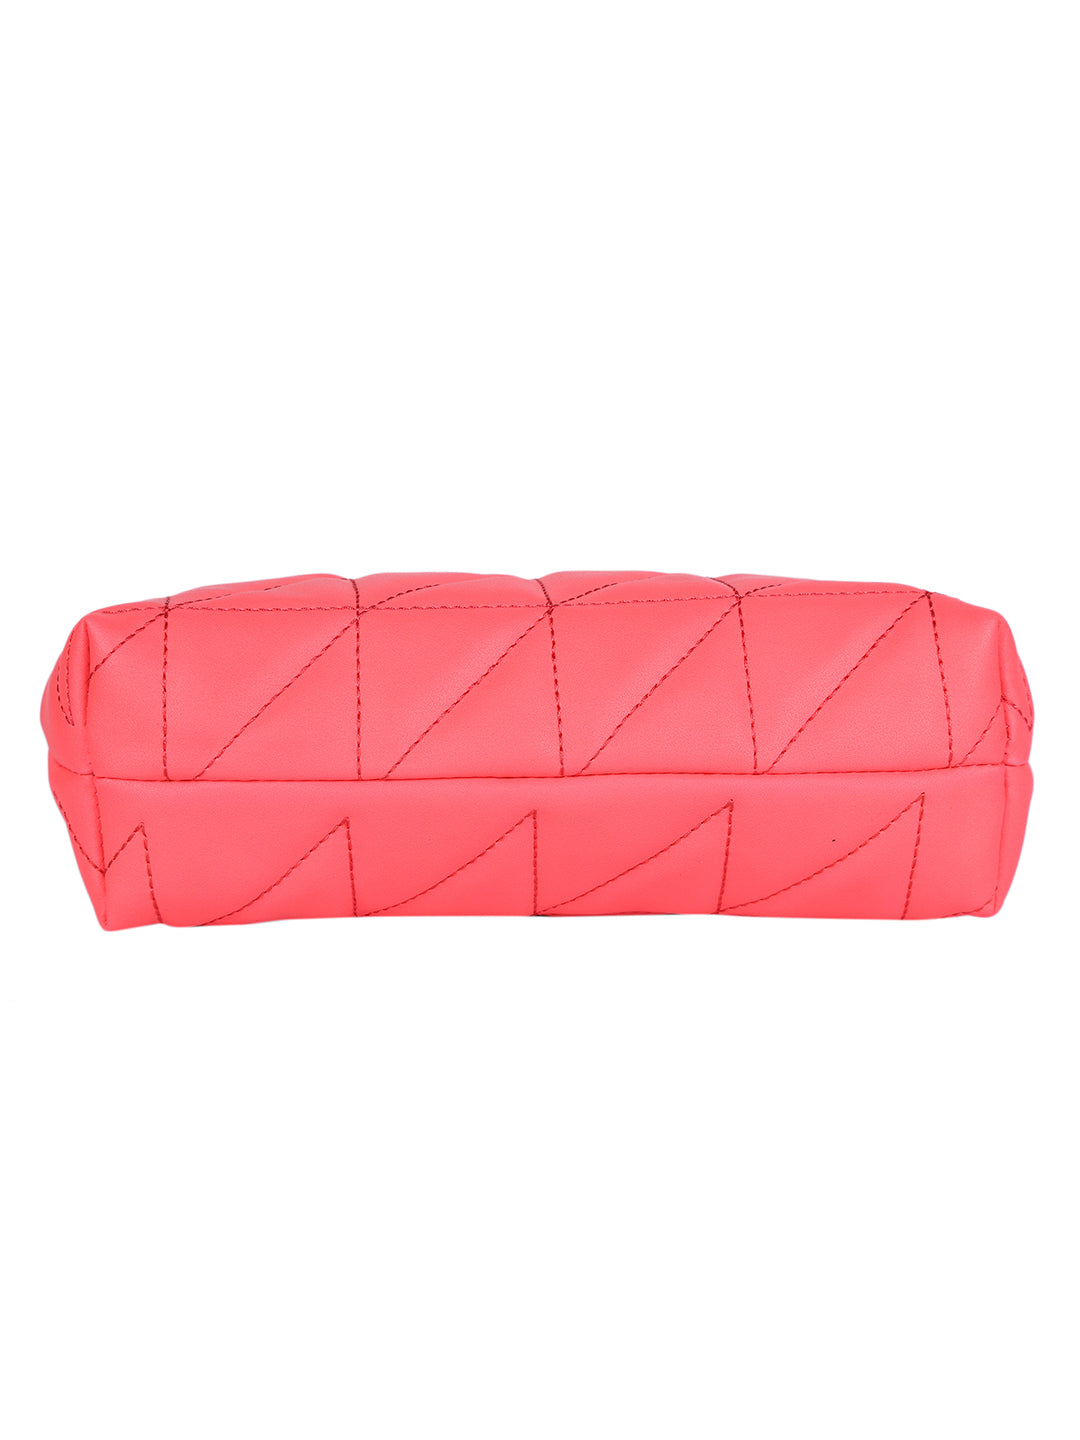 MINI WESST Women's Pink Shoulder & Sling Bag Both